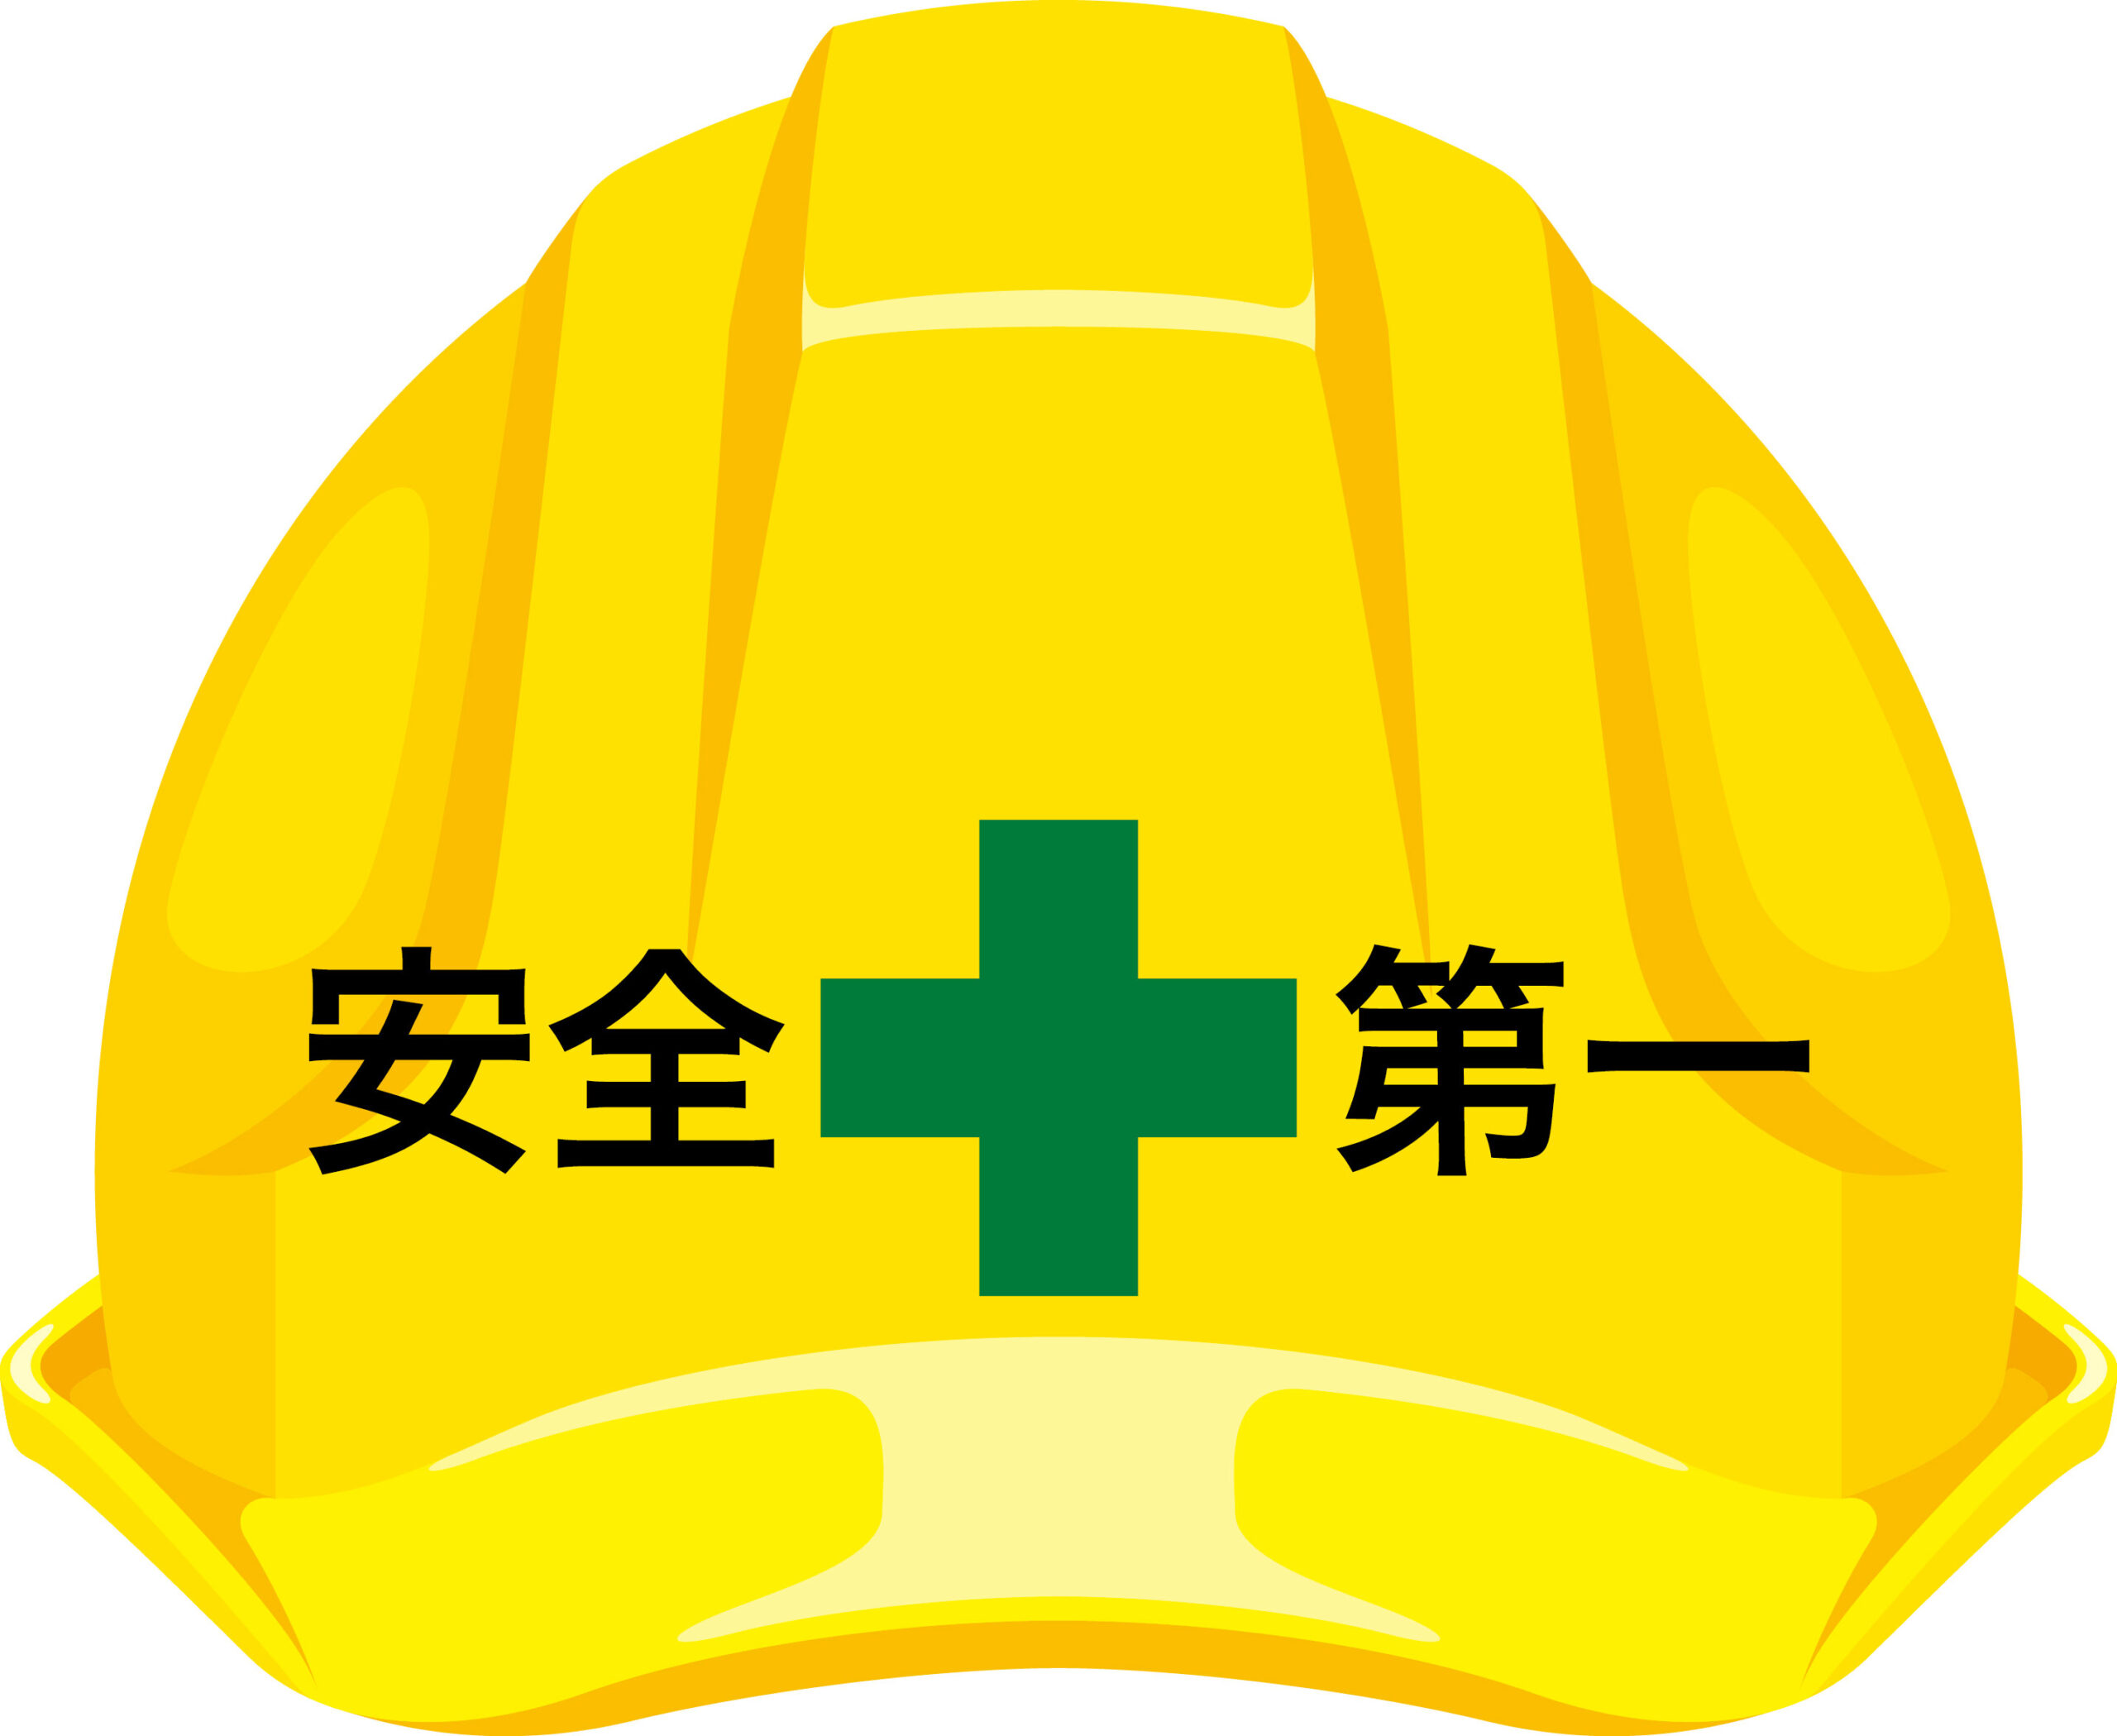 安全第一と書かれた黄色のヘルメット